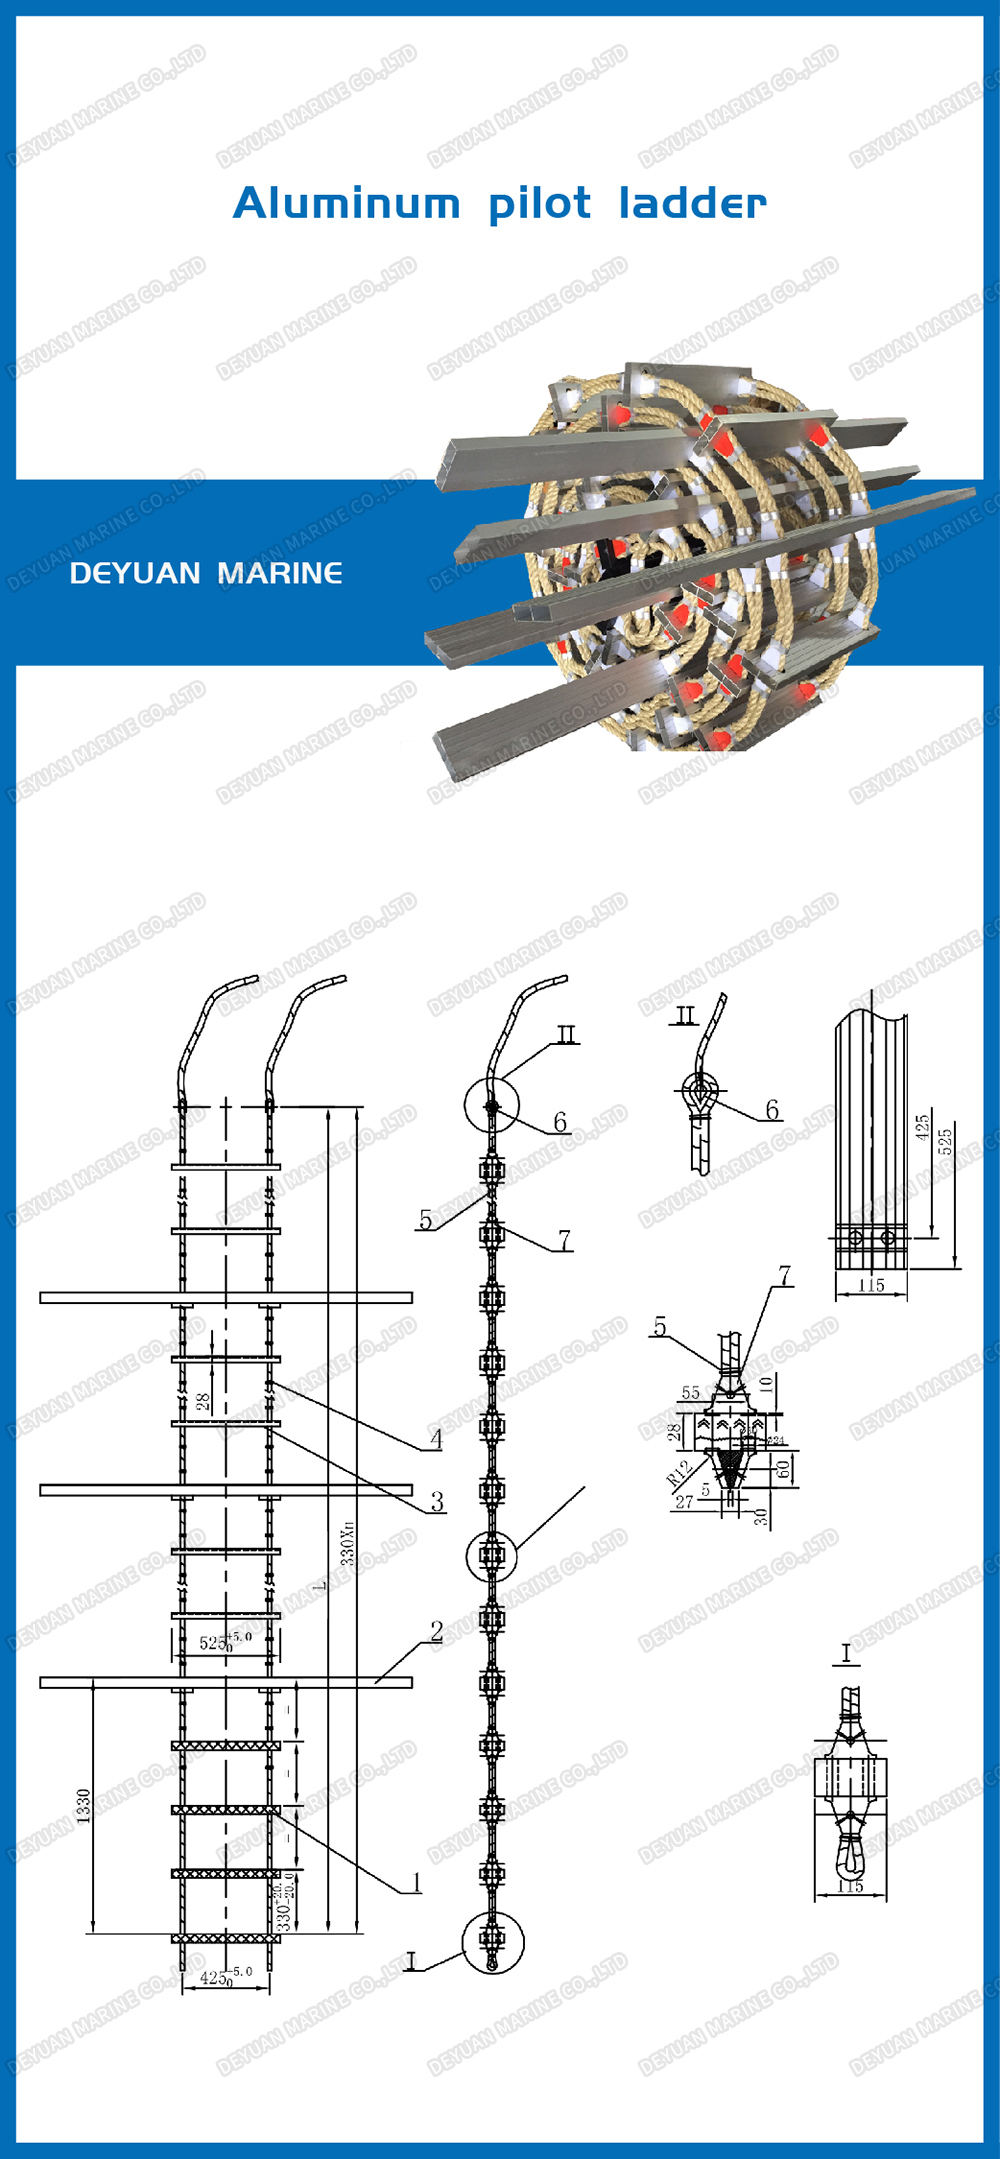 aluminium pilot ladders